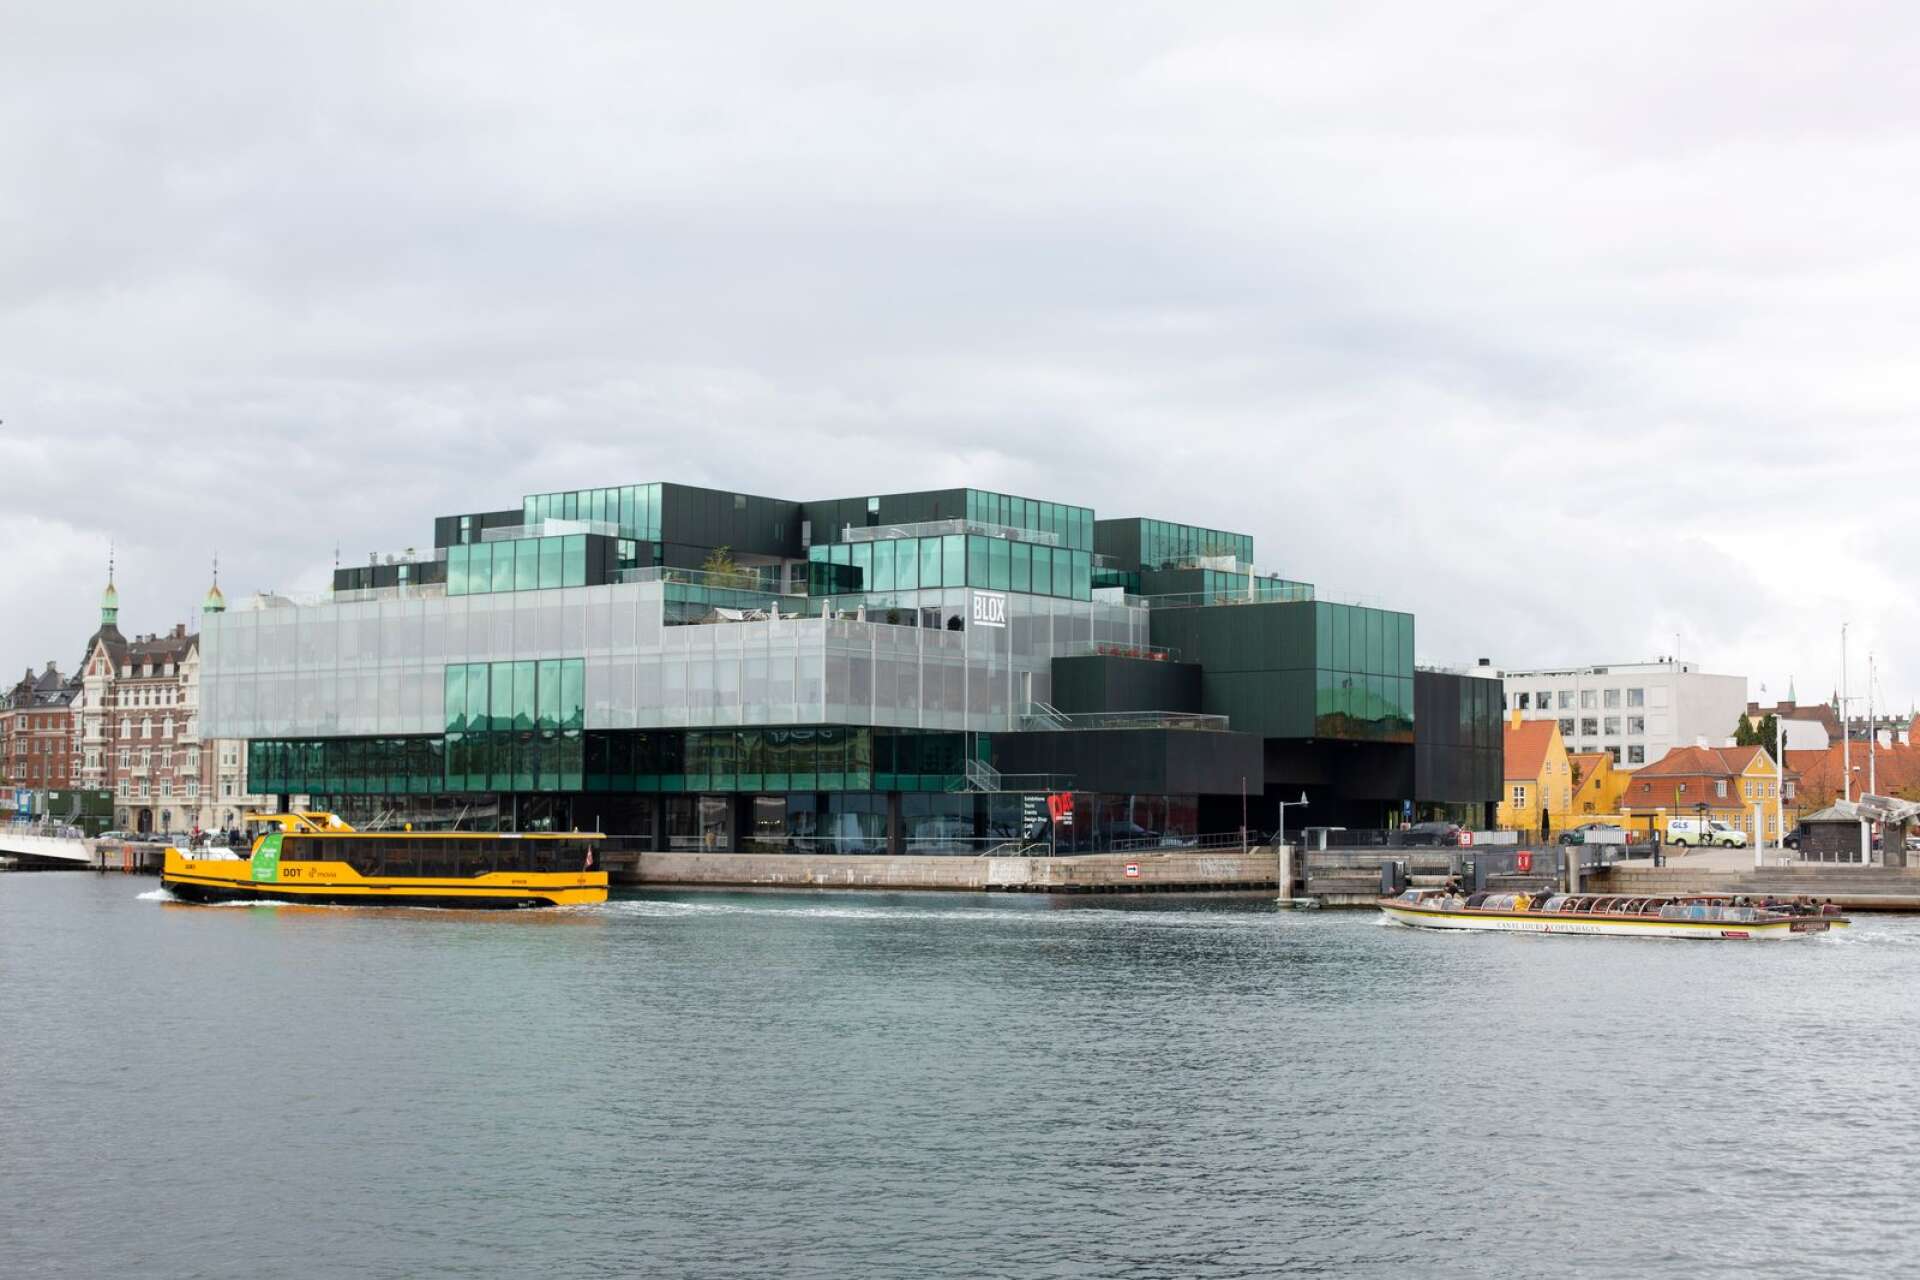 Samlingspunkten Blox är en av Köpenhamns mest omdebatterade nya byggnader. De gula, eldrivna hamnbussarna är ett prisvärt transportmedel och alternativ till sightseeingbåtarna i Köpenhamn.